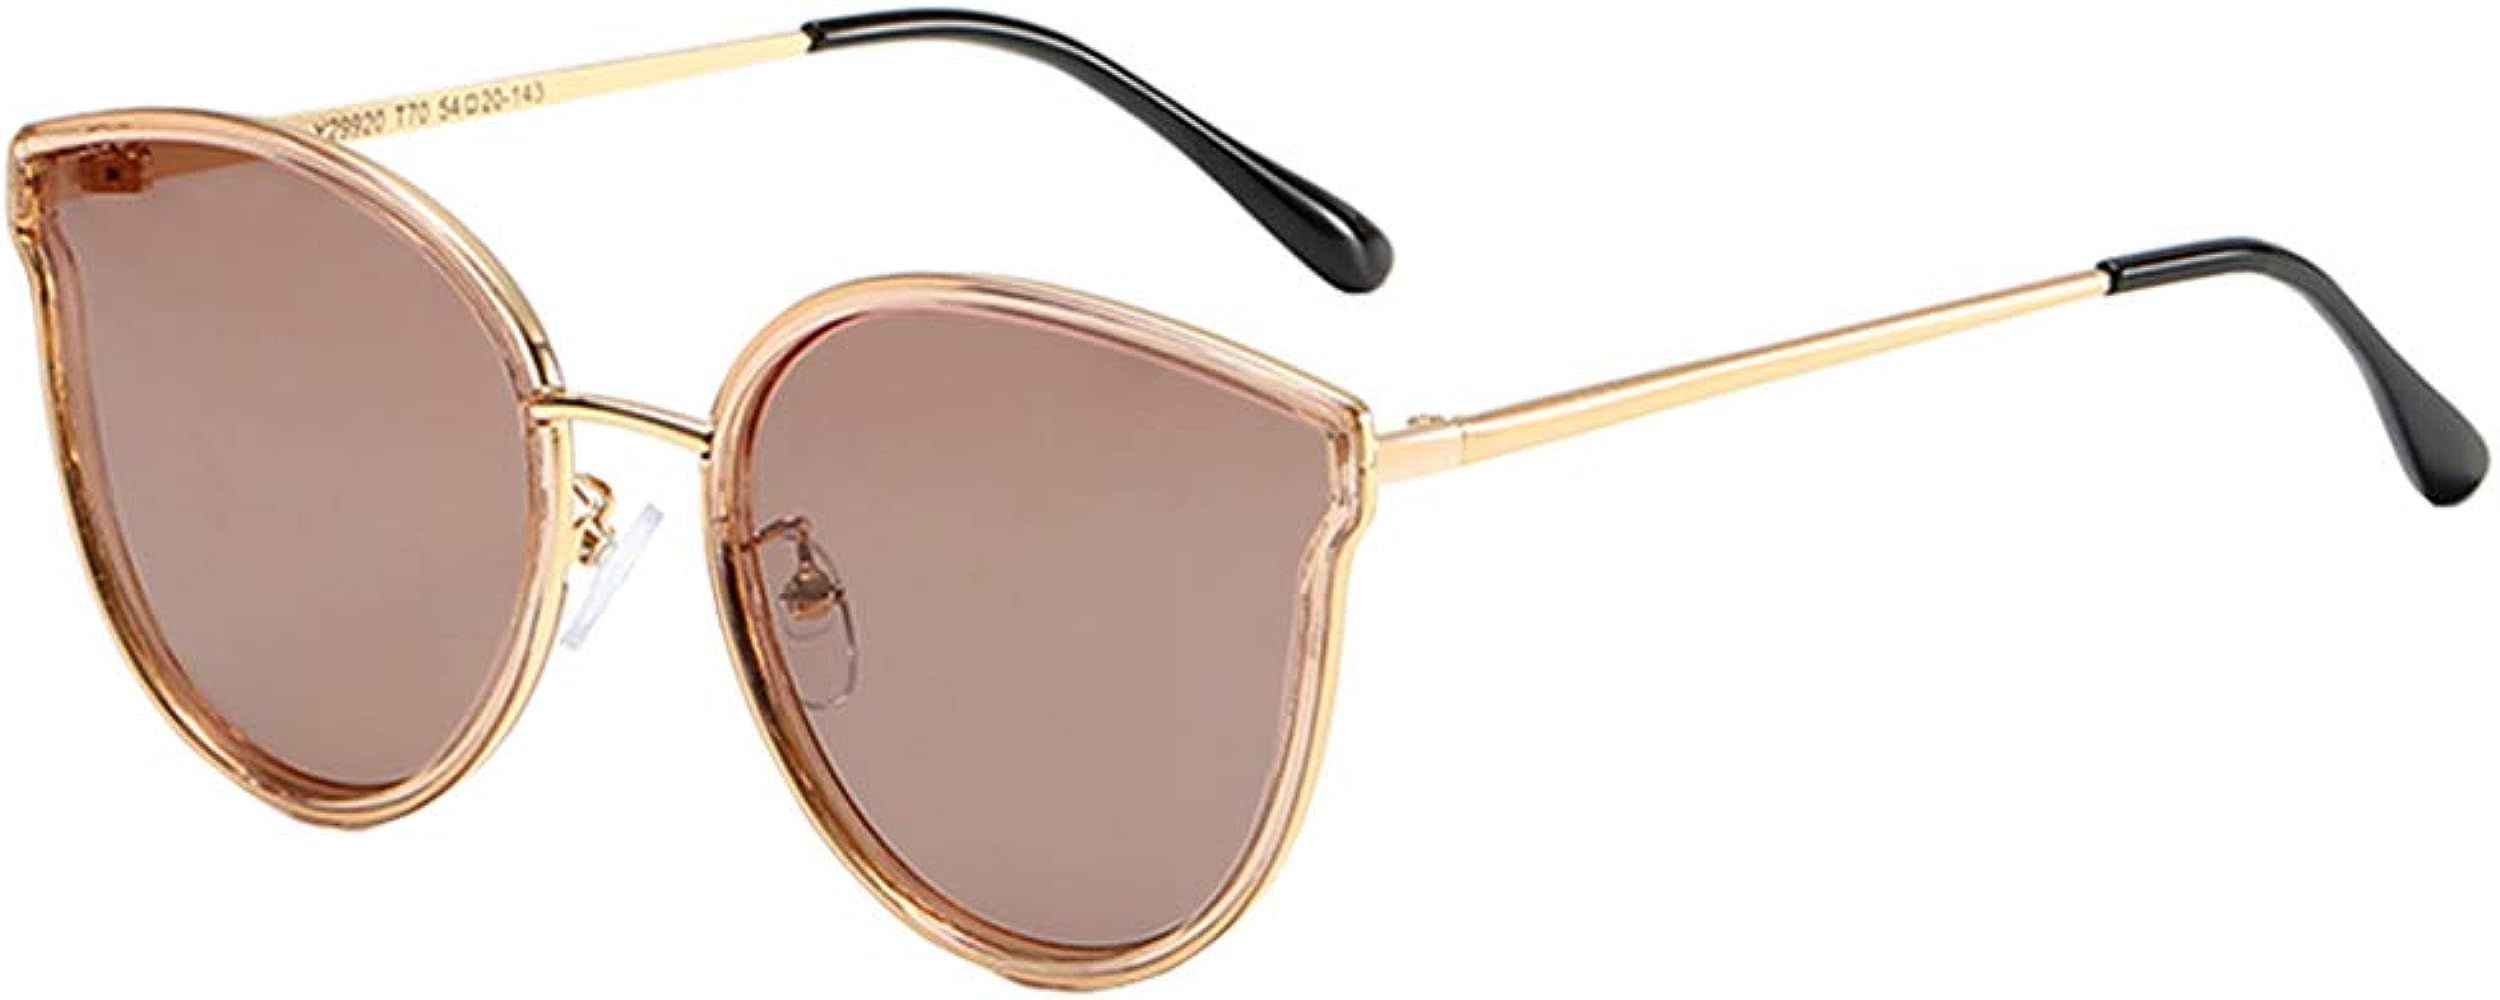 Oversized Cat Eyes Sunglasses for Women Polarized Fashion Vintage Eyewear for Outdoor - 100% UV P... | Amazon (US)